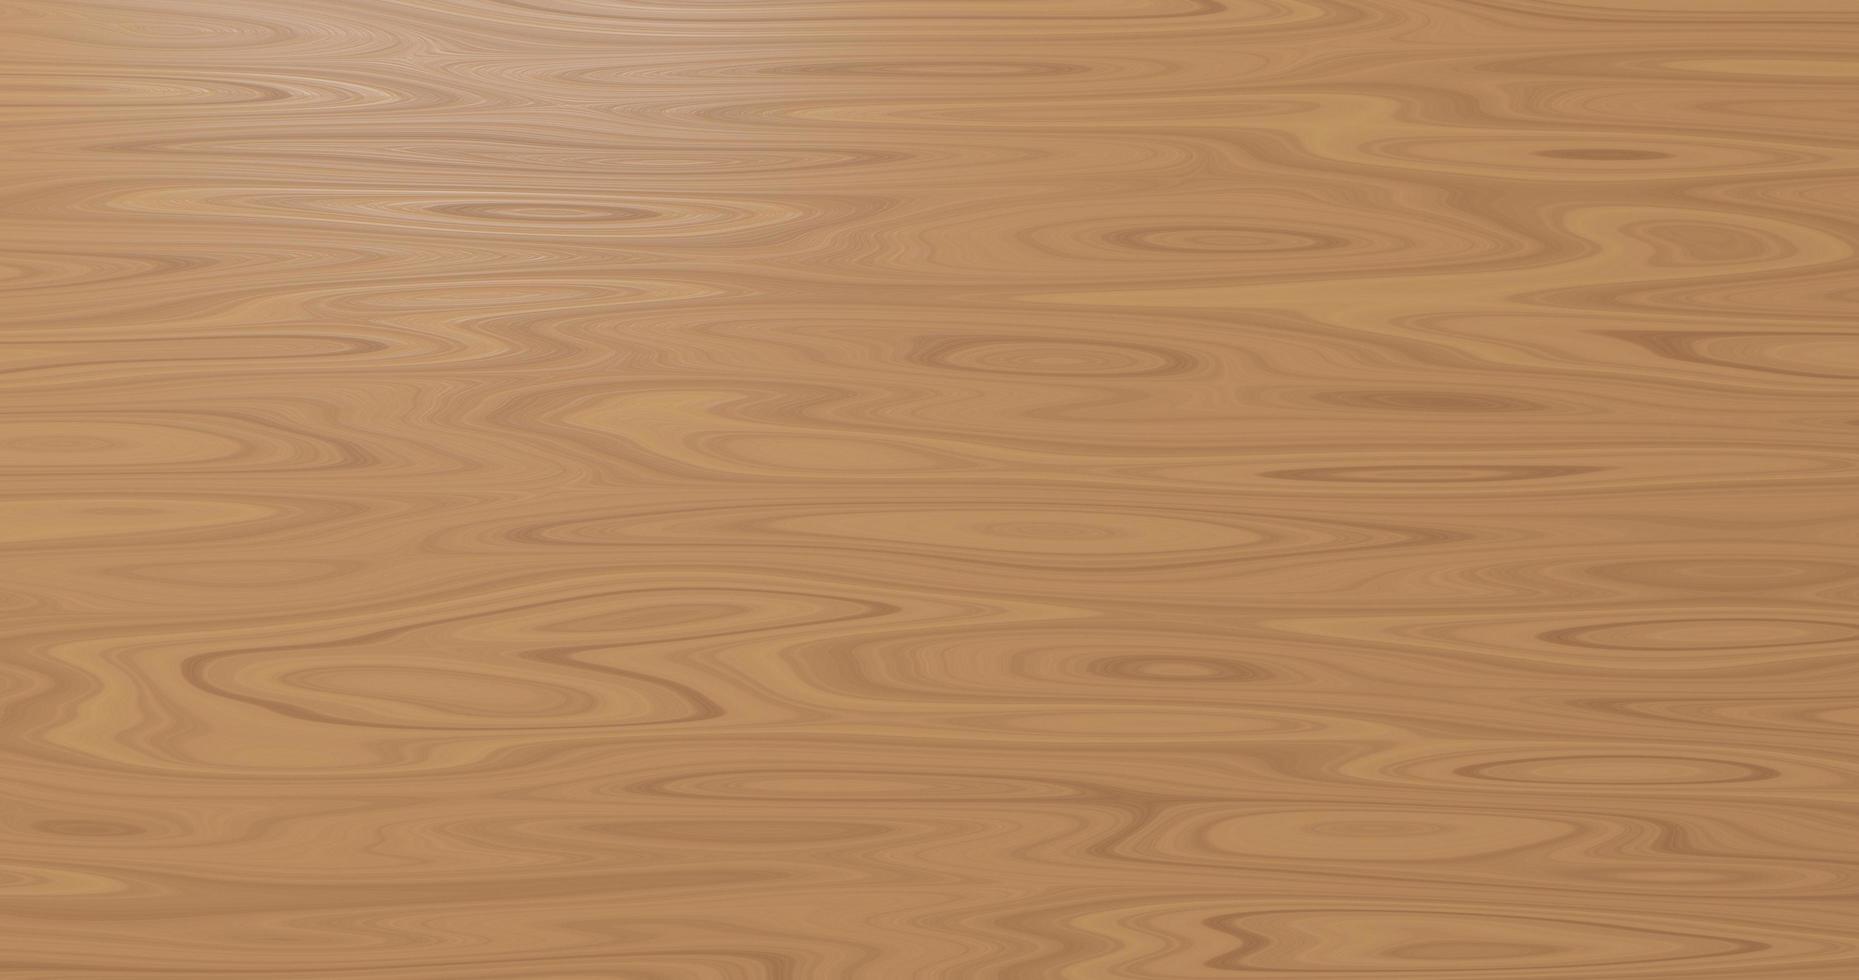 superfície de textura de madeira de prancha marrom áspera foto